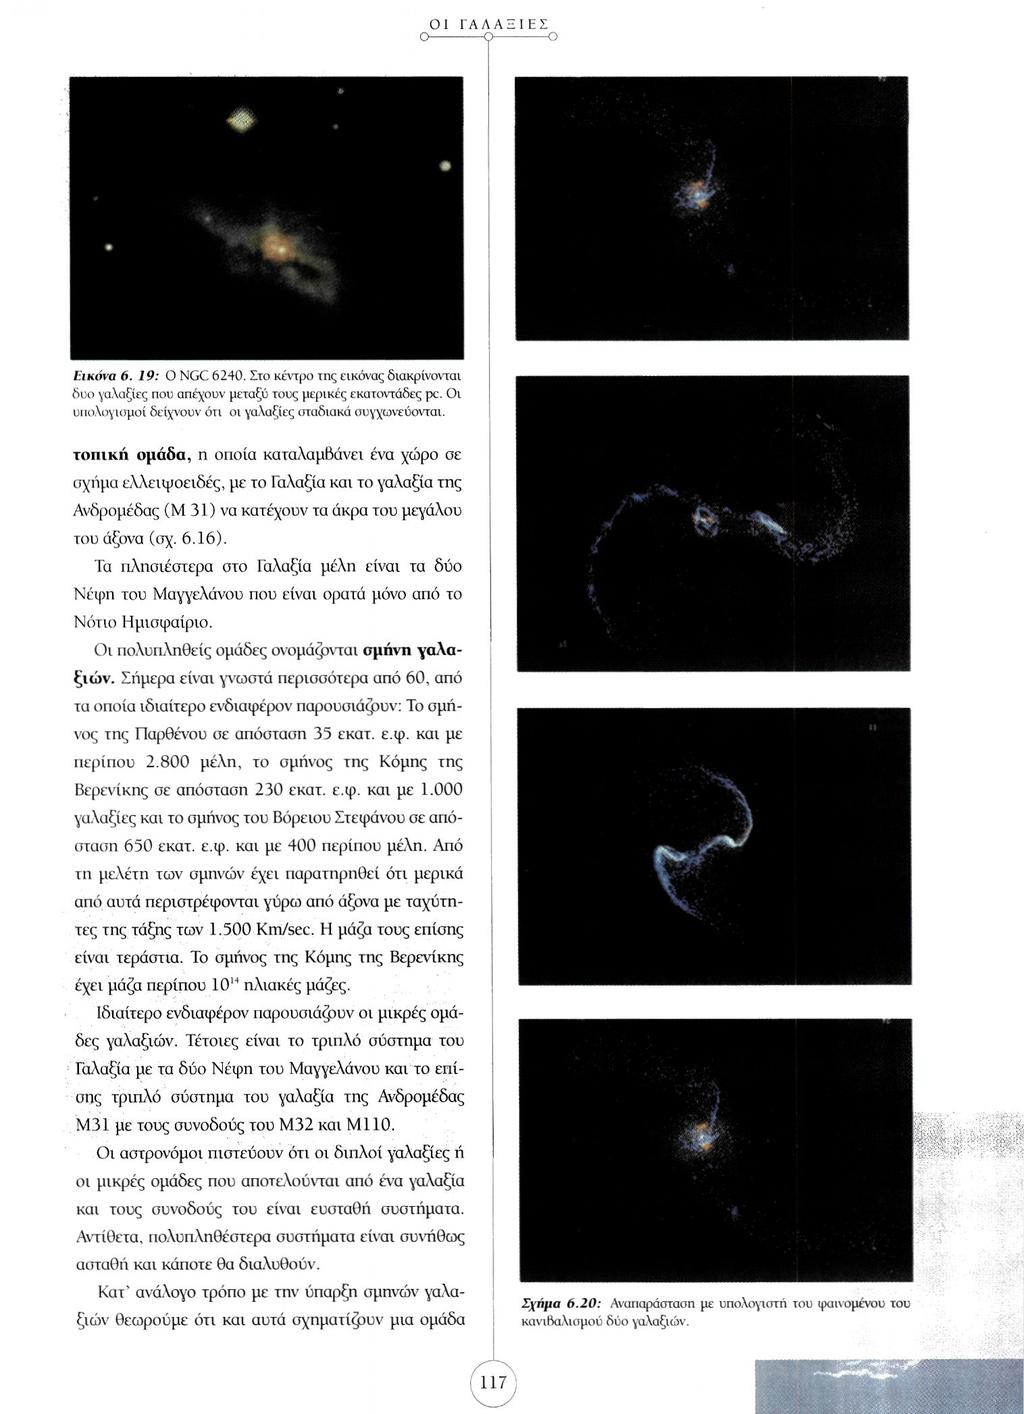 Εικόνα 6. 19: Ο NGC 6240. Στο κέντρο της εικόνας διακρίνονται δυο γαλαξίες που απέχουν μεταξύ τους μερικές εκατοντάδες pc. Οι υπολογισμοί δείχνουν ότι οι γαλαξίες σταδιακά συγχωνεύονται.